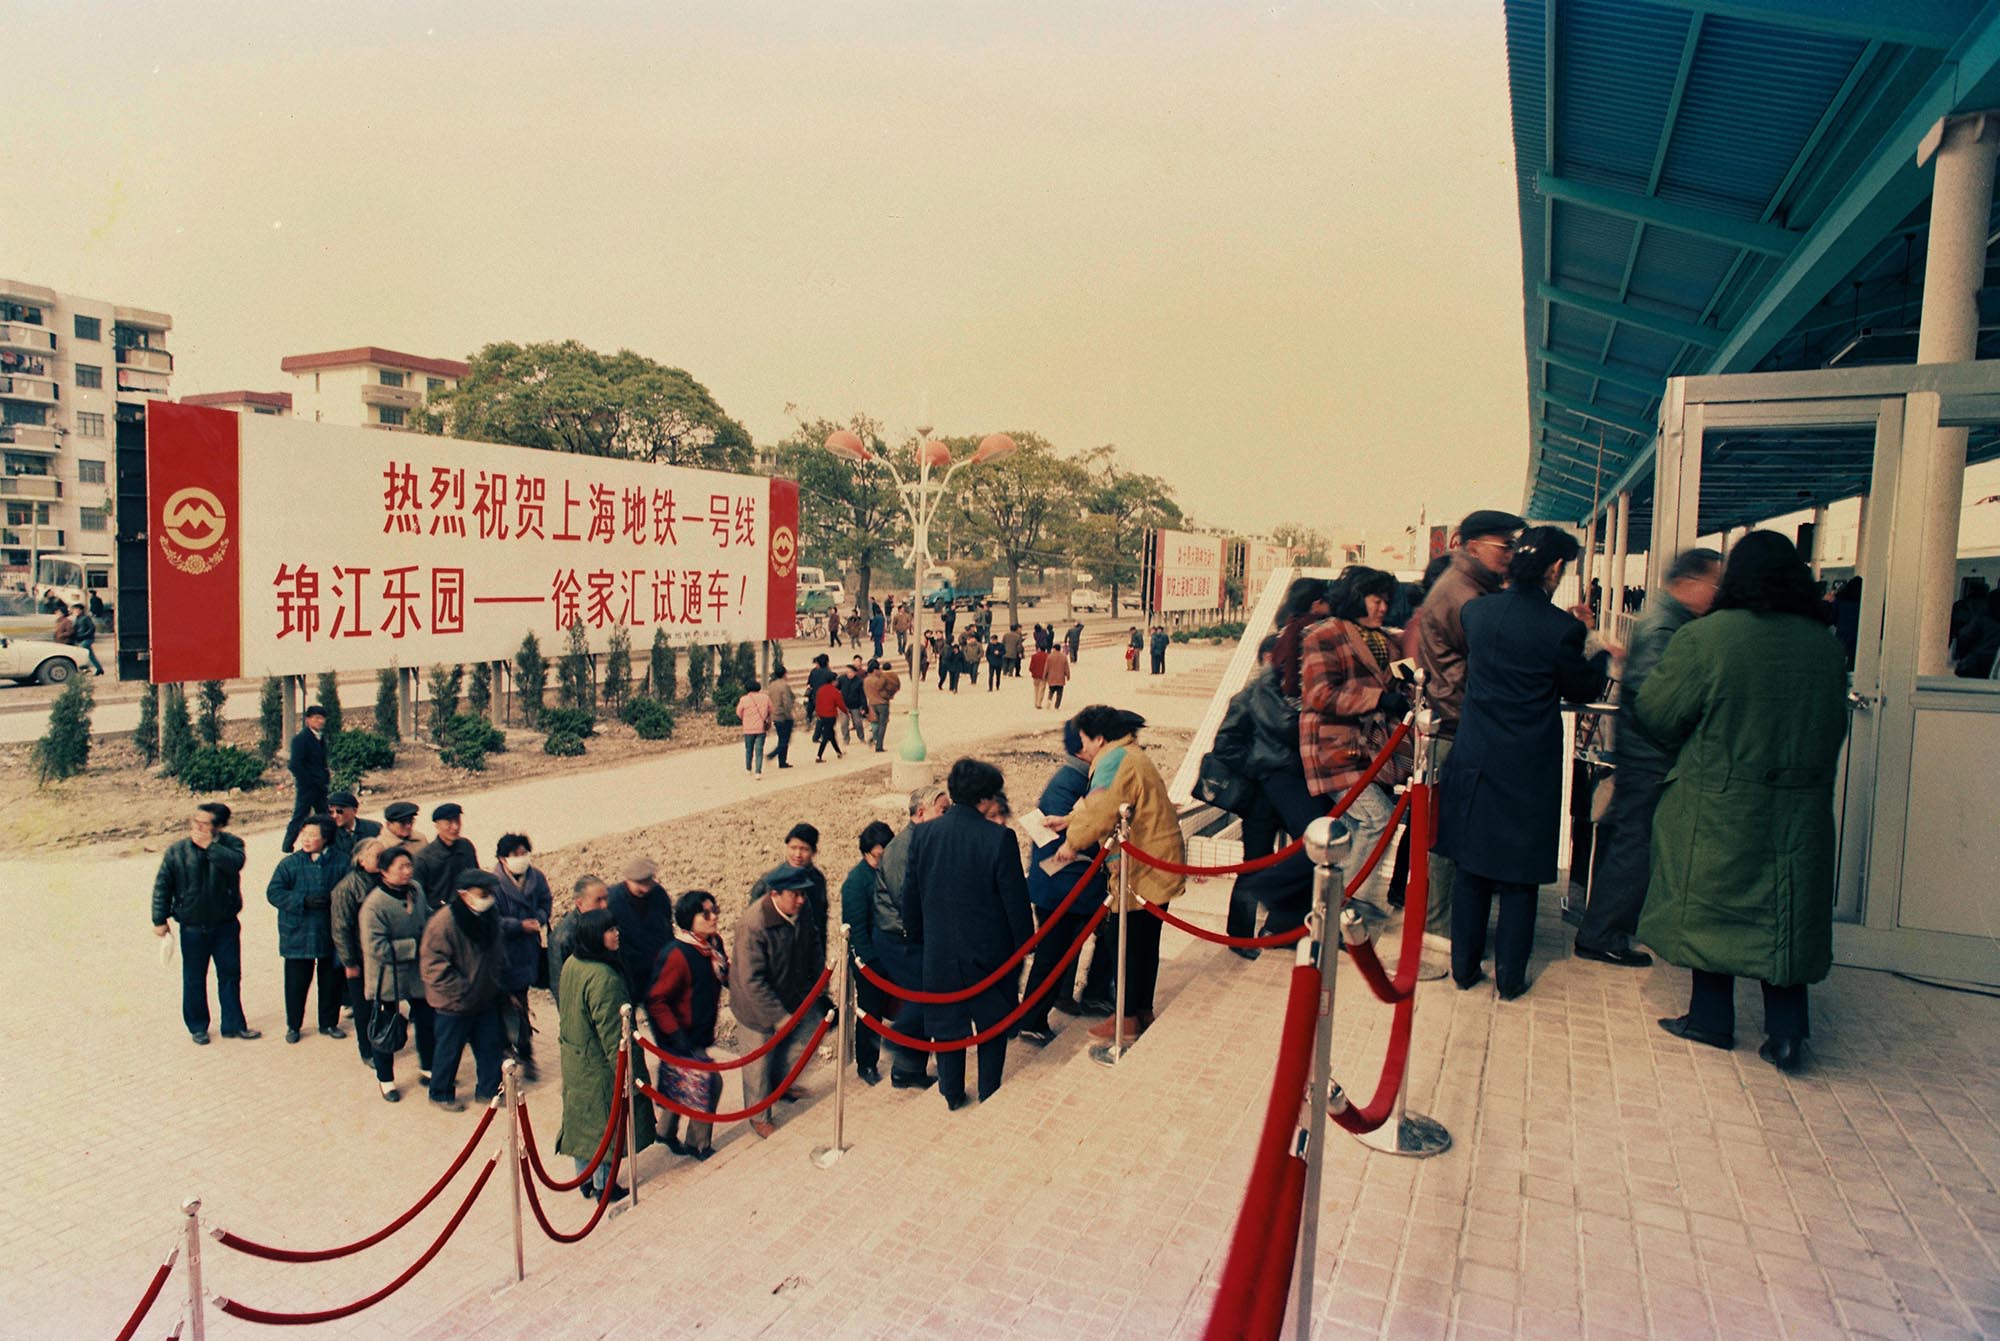 1993年5月28日，上海地铁一号线南段（锦江乐园至徐家汇区间）投入观光试运营。图为人们排队进站。陆杰 图